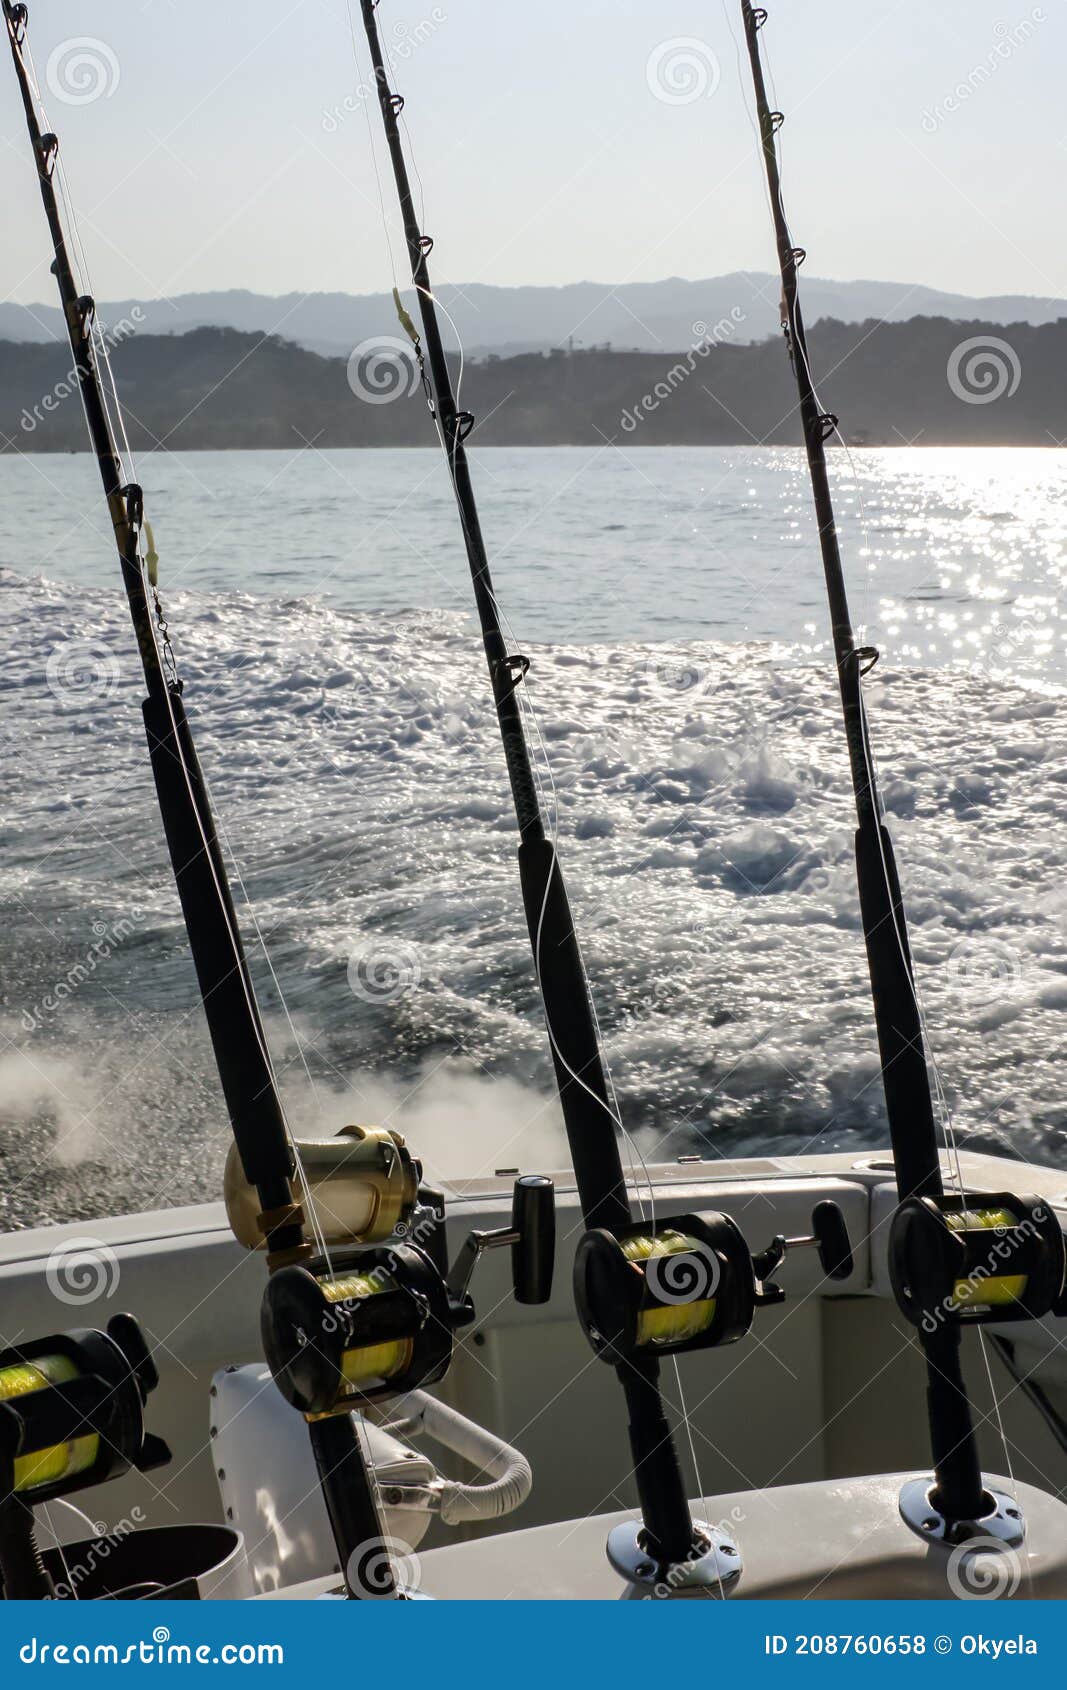 https://thumbs.dreamstime.com/z/barras-giratorias-con-carretes-en-los-soportes-antes-de-pescar-el-barco-equipo-para-la-pesca-trofeos-marinos-un-yate-208760658.jpg